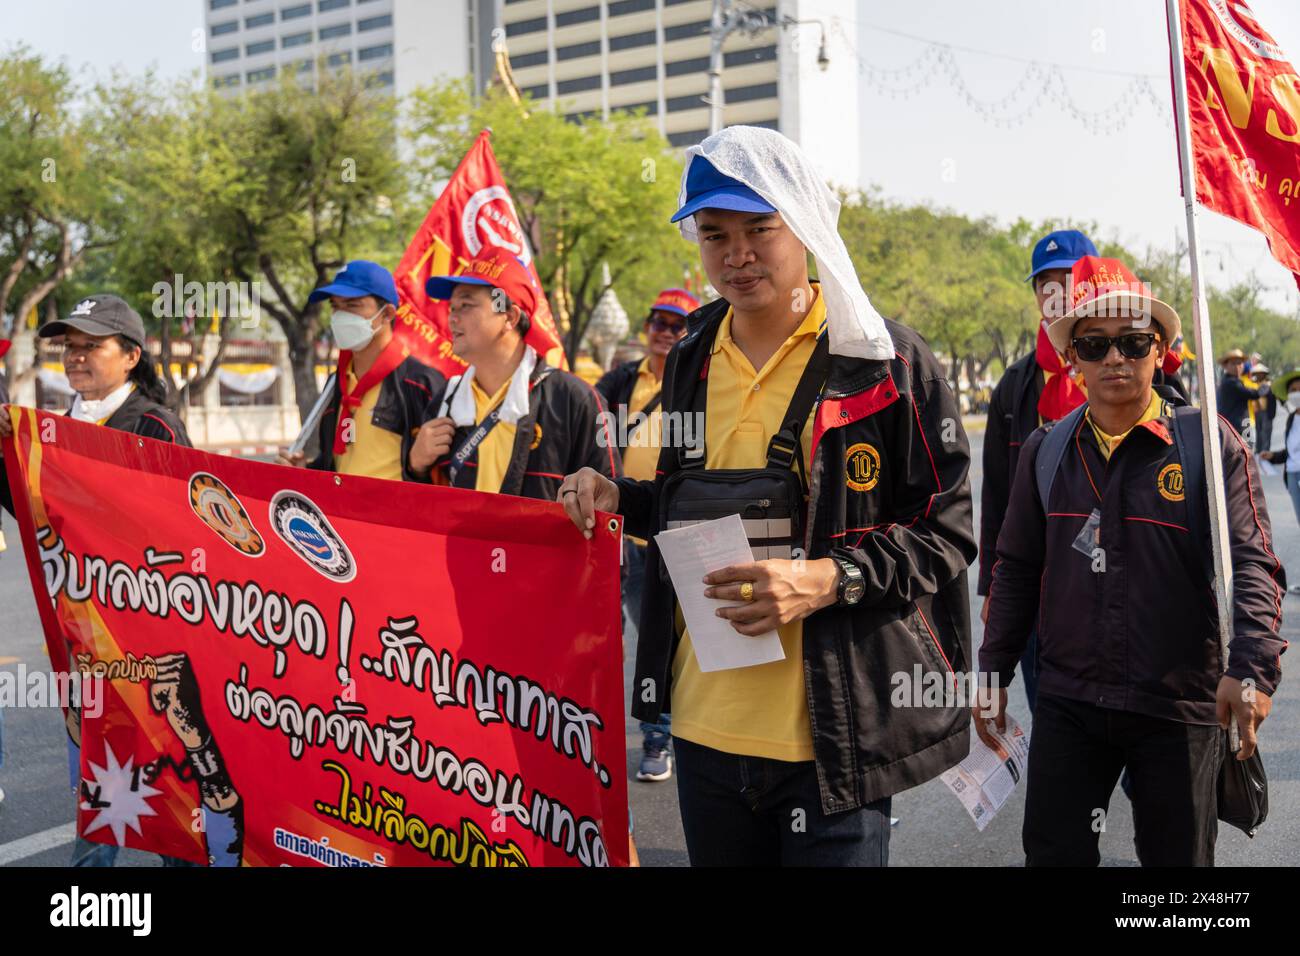 Bangkok, Thailand. Mai 2024. Arbeiter werden beim Labor Day March für ihre Rechte protestieren sehen. Thailändische und Wanderarbeiter nehmen an einem Marsch zum Internationalen Tag der Arbeit 2024 in Bangkok Teil, um mehr Wohlstand sowie einen besseren Mindestlohn und gleiche Rechte für Wanderarbeitnehmer zu erreichen. Quelle: SOPA Images Limited/Alamy Live News Stockfoto